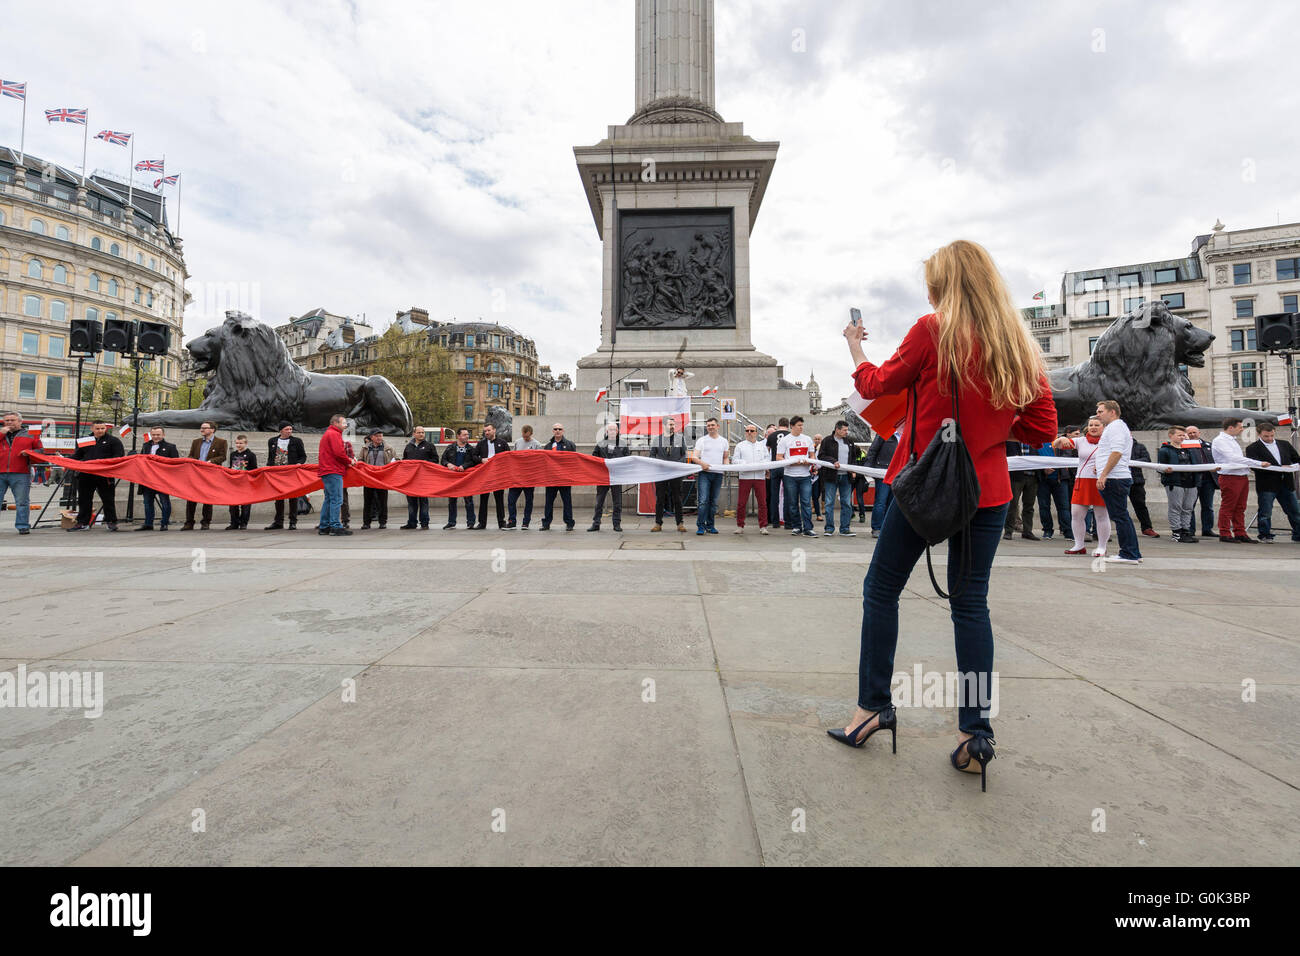 Londres, Royaume-Uni. 2 mai, 2016. Les poteaux de la célébrer le Jour du drapeau national polonais à Trafalgar Square Crédit : Guy Josse/Alamy Live News Banque D'Images